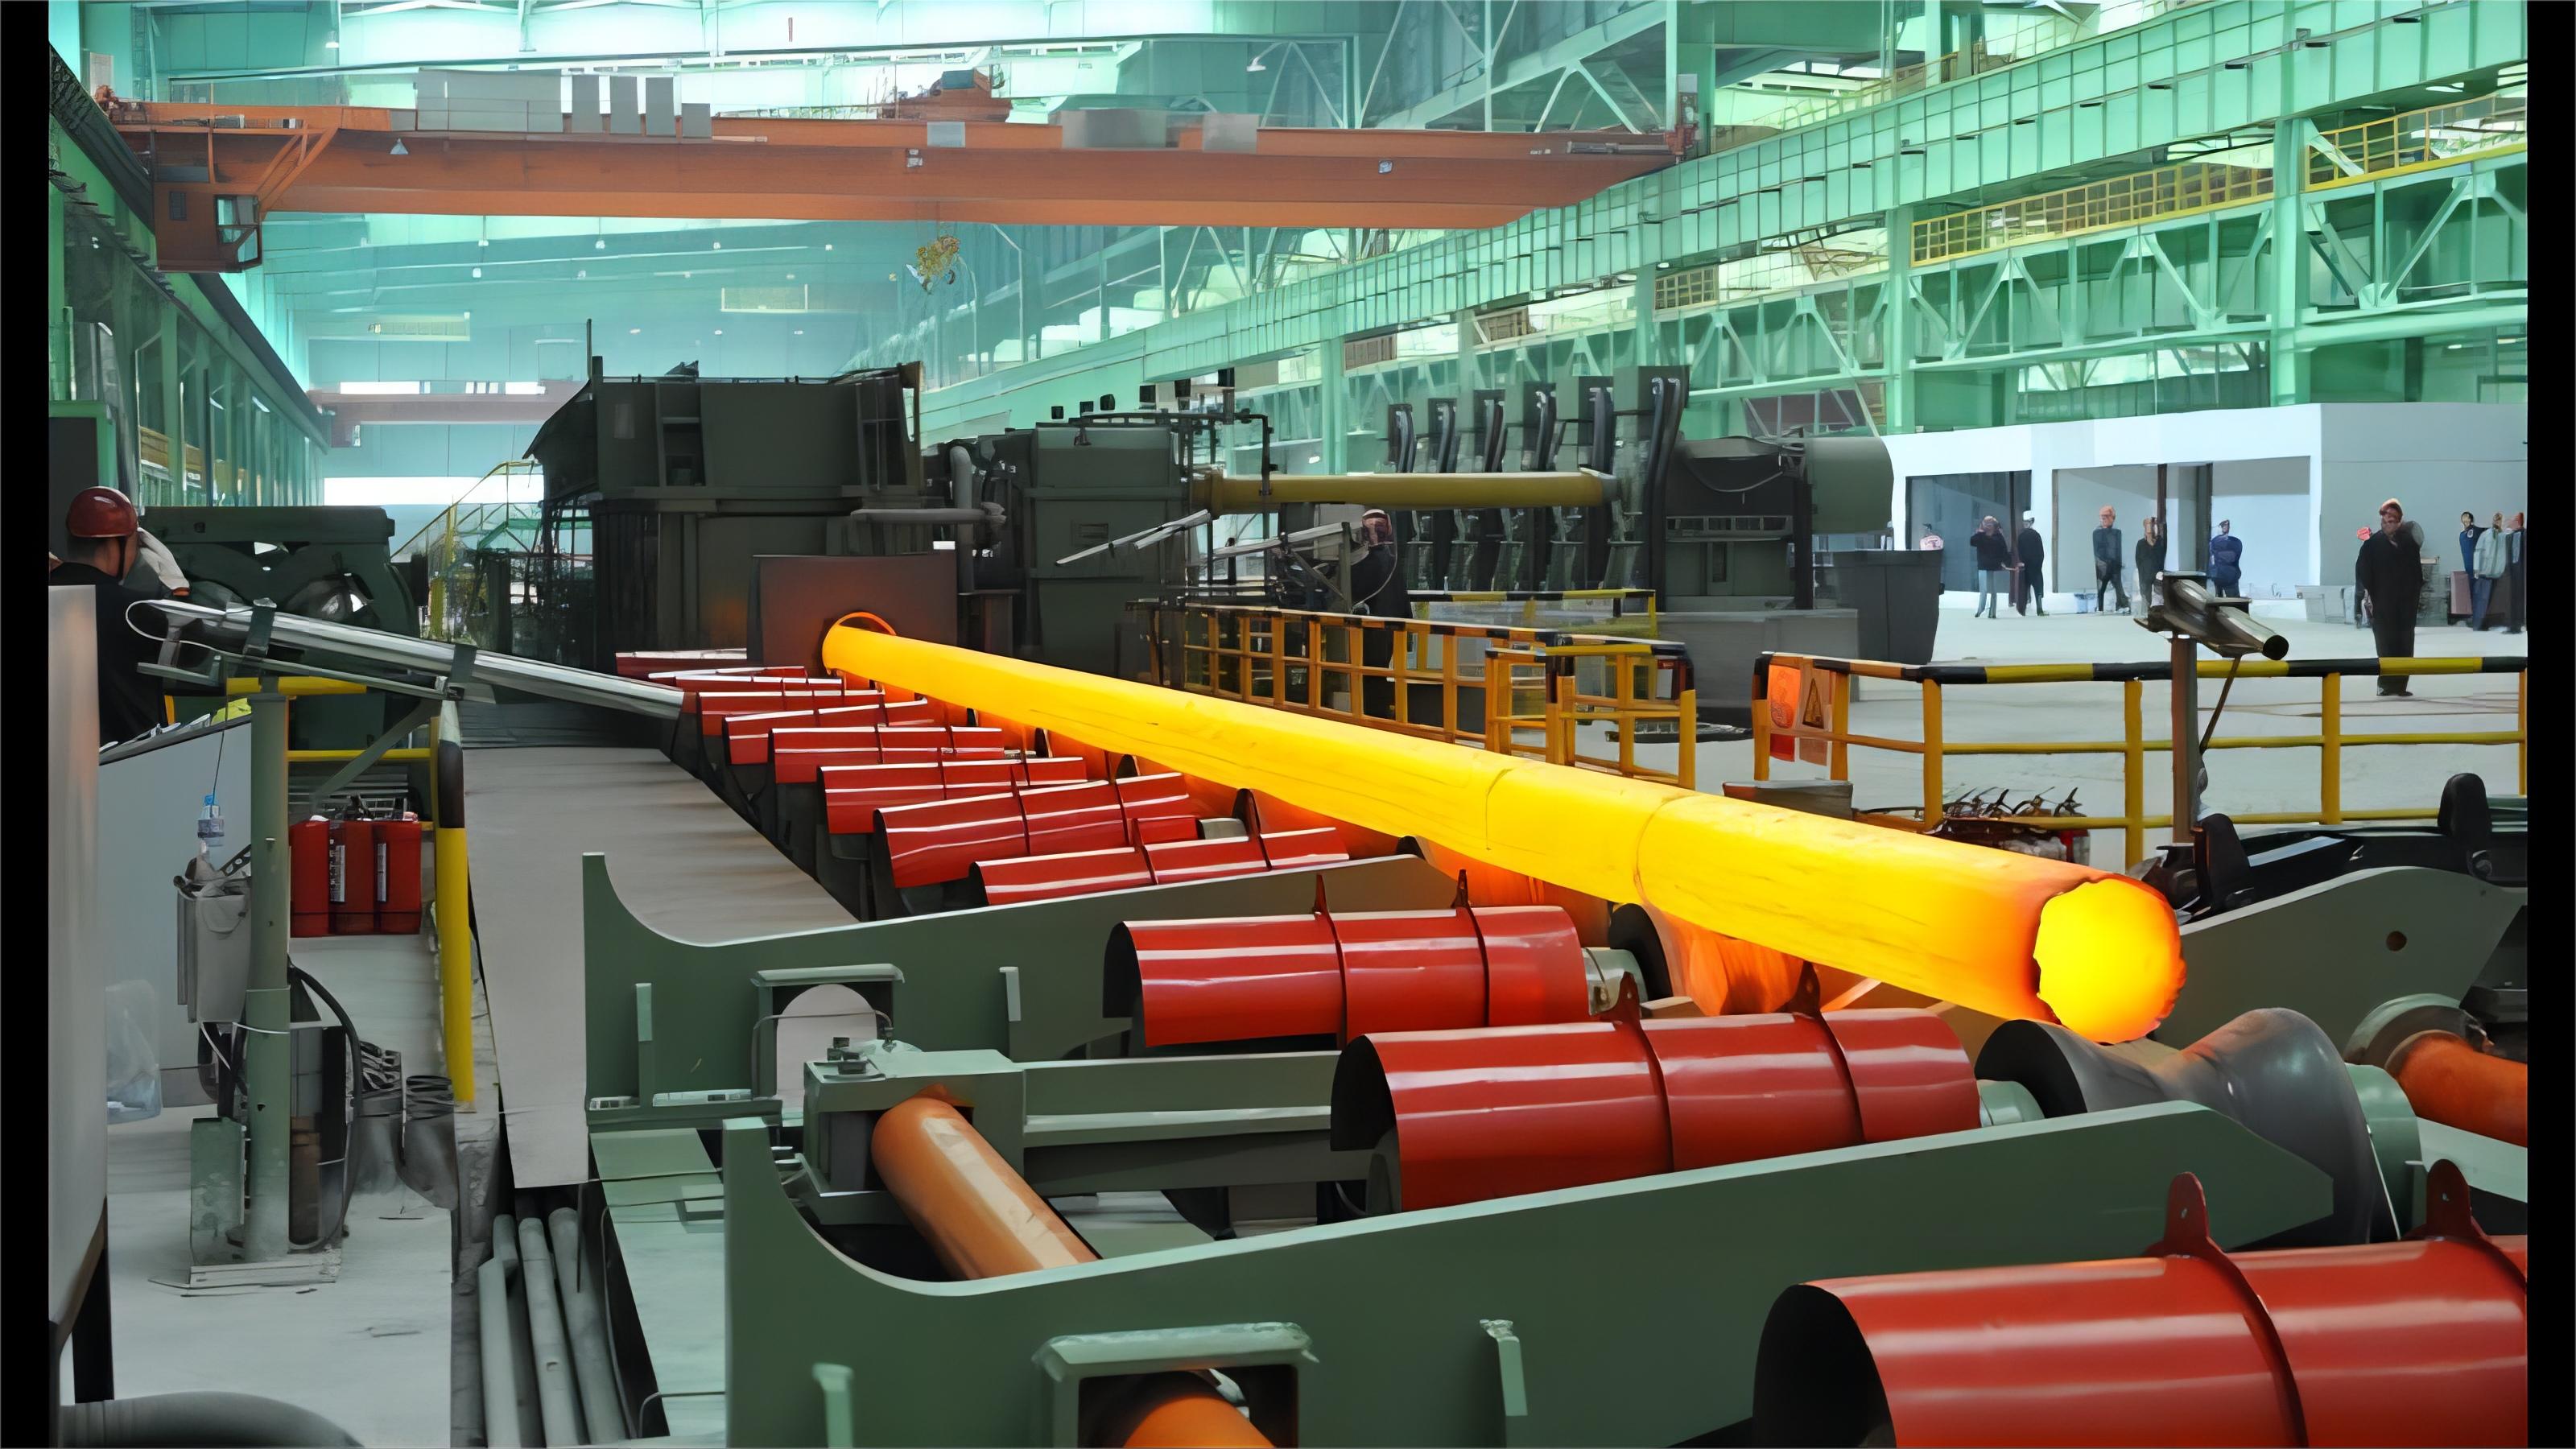 ASTM A106 varrat nélküli szénacél csövek magas hőmérsékletű folyadékszállításhoz: Womic Steel gyártása és alkalmazása